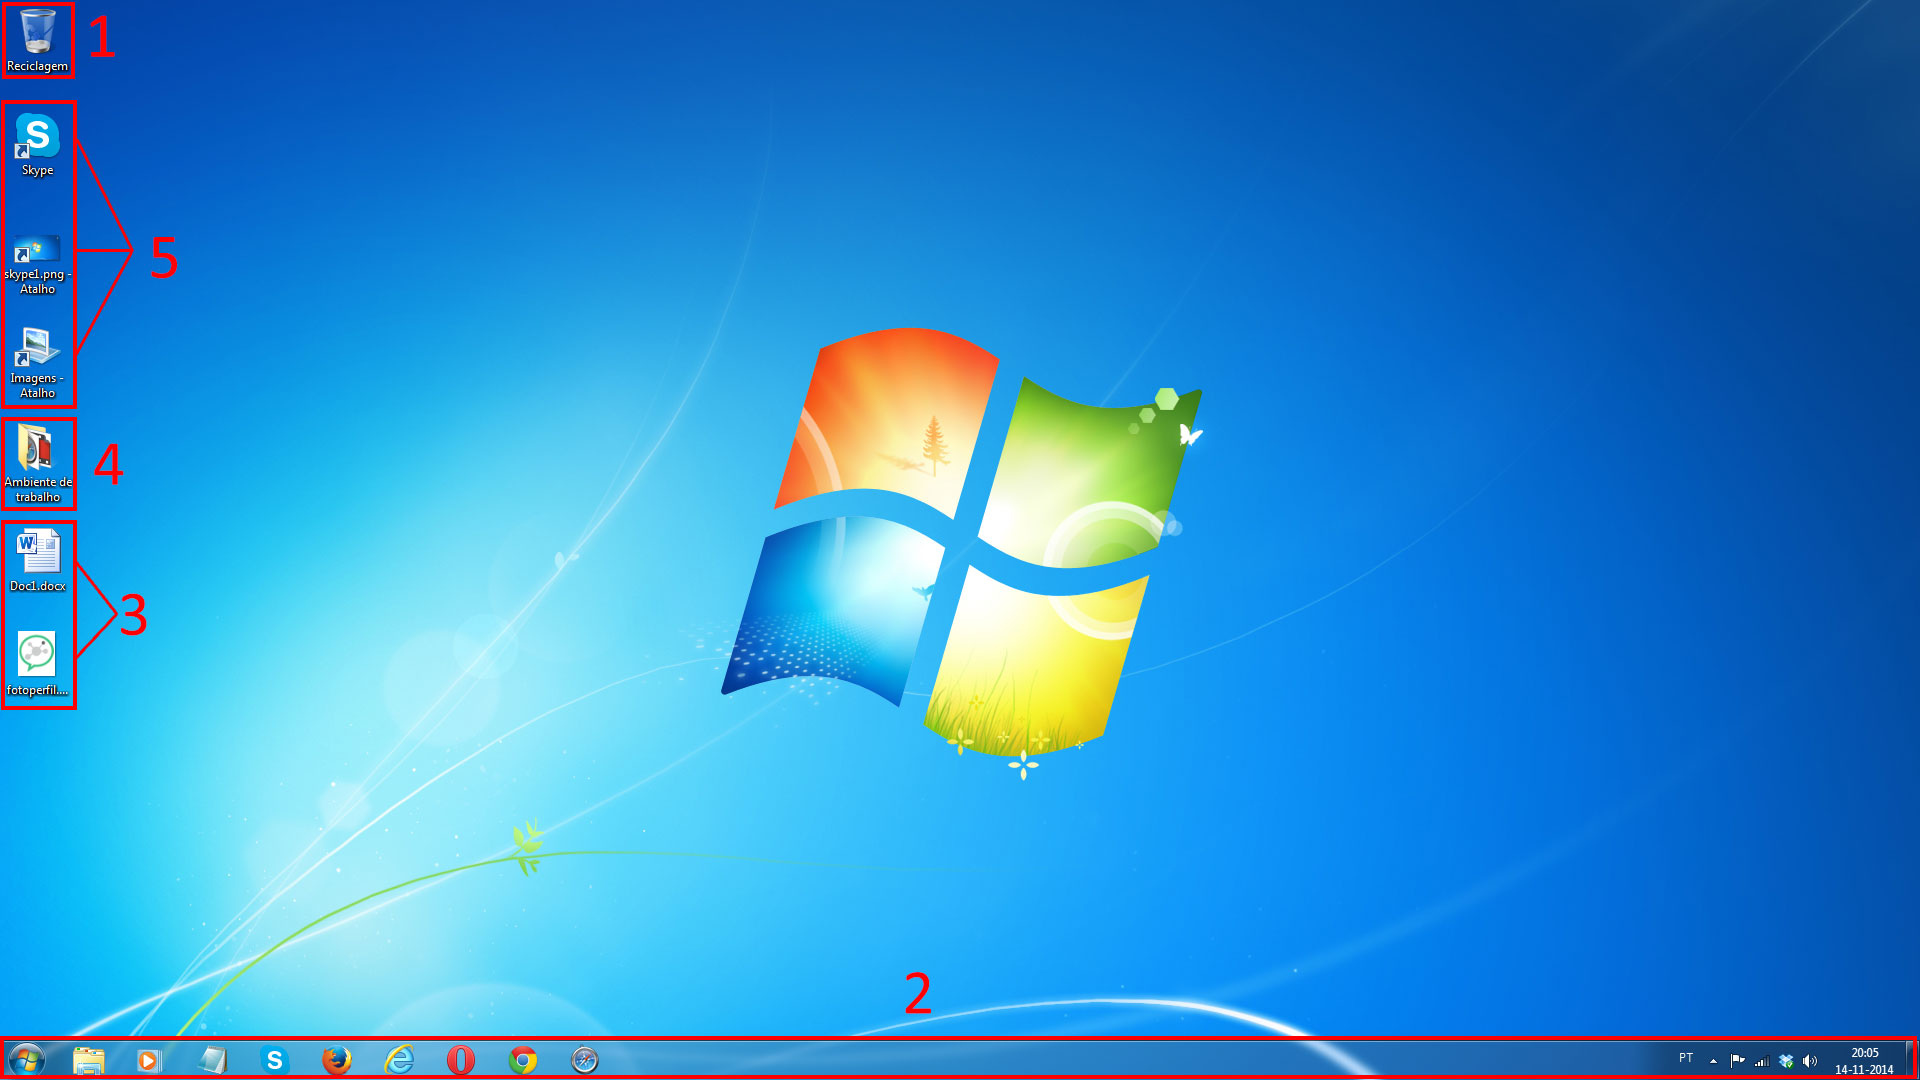 Figura 1 - ambiente de trabalho do Windows 7.